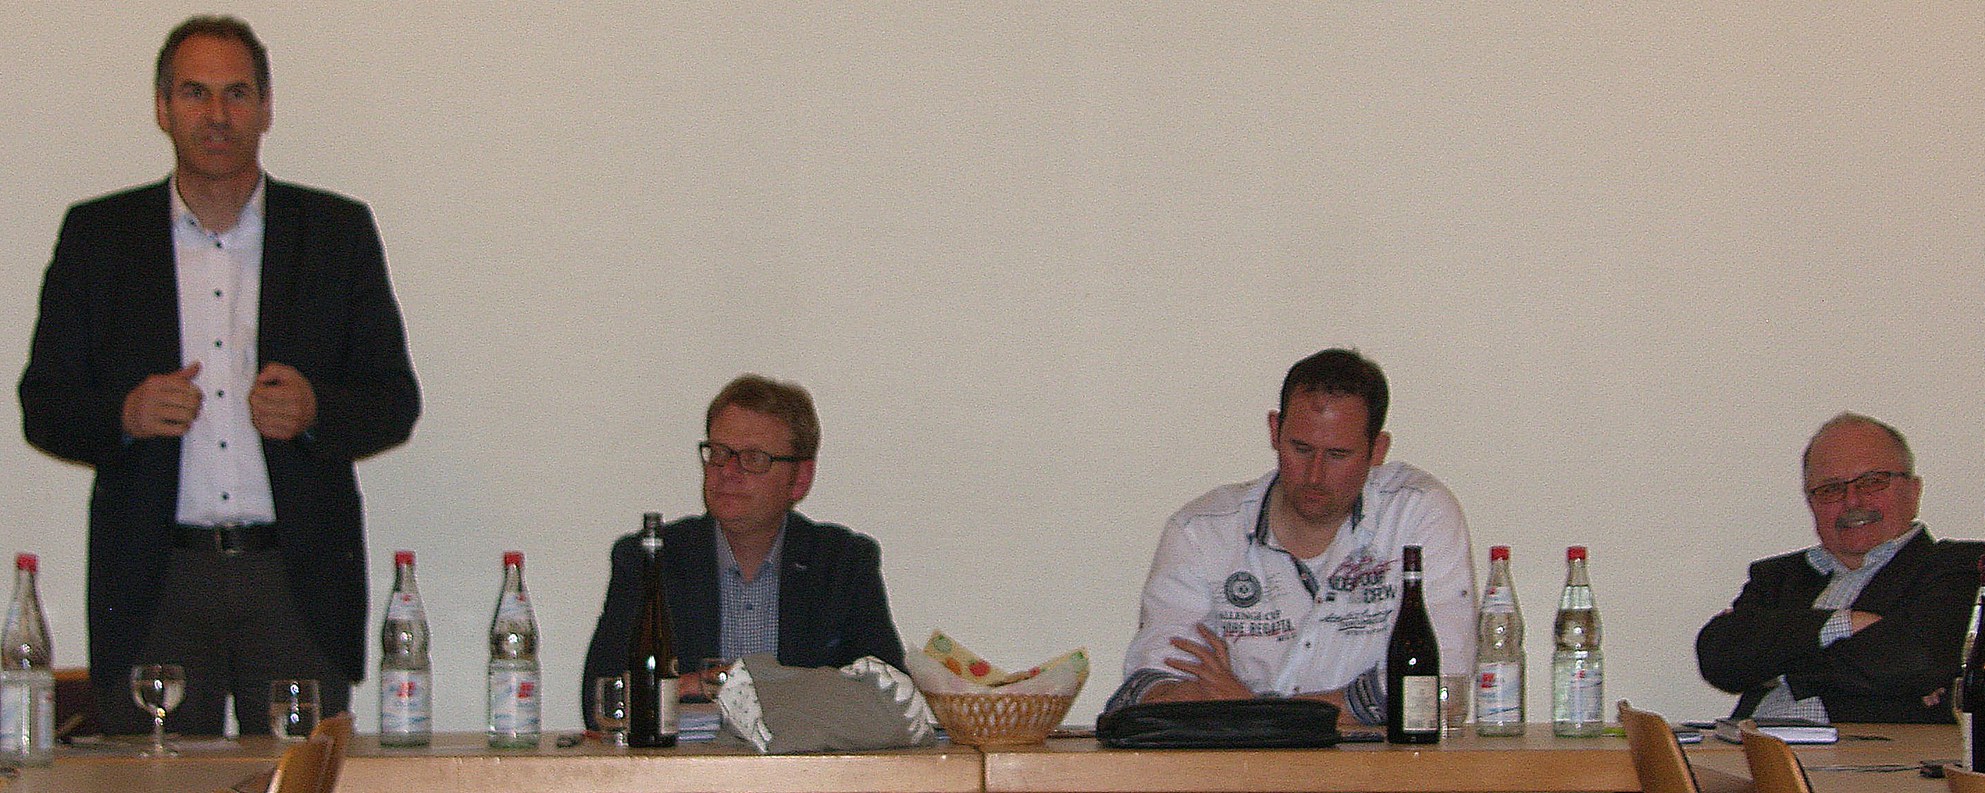 Dietmar Seefeldt, Dr. Gebhart, Timo Reuther und Otto Paul bei der Infoveranstaltung- Foto: Pfalz-Express/Ahme 